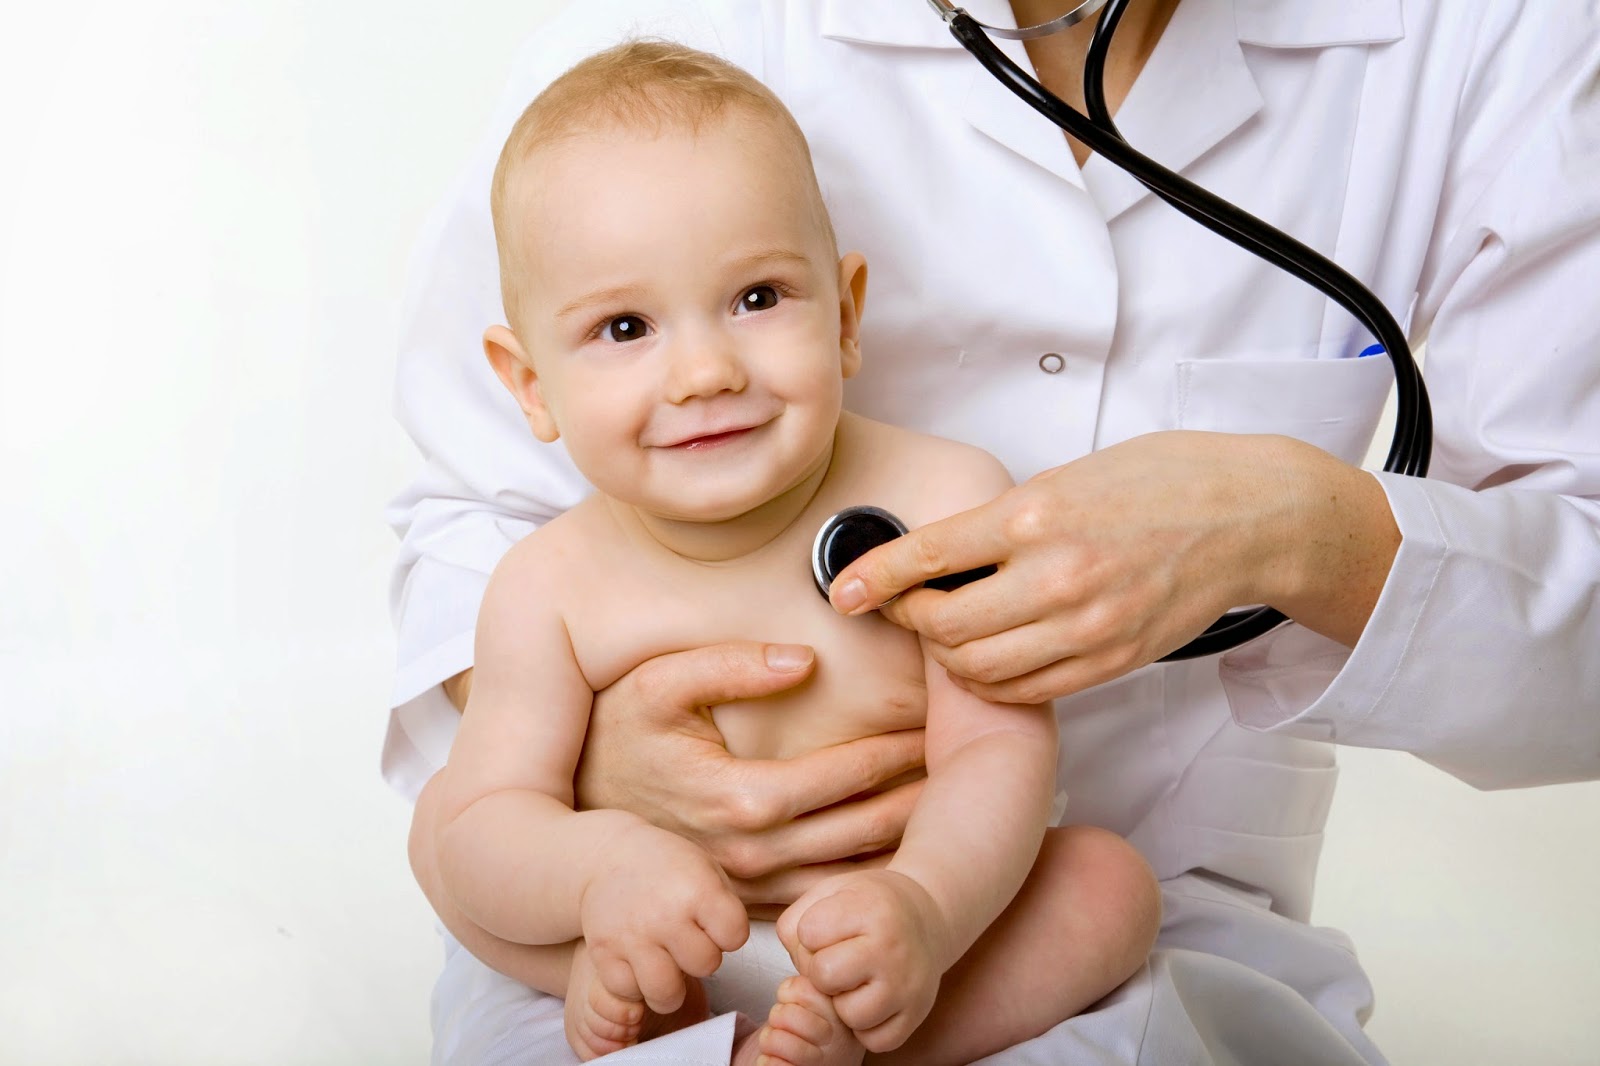 Συνταγογραφούν αντιψυχωσικά φάρμακα σε μωρά